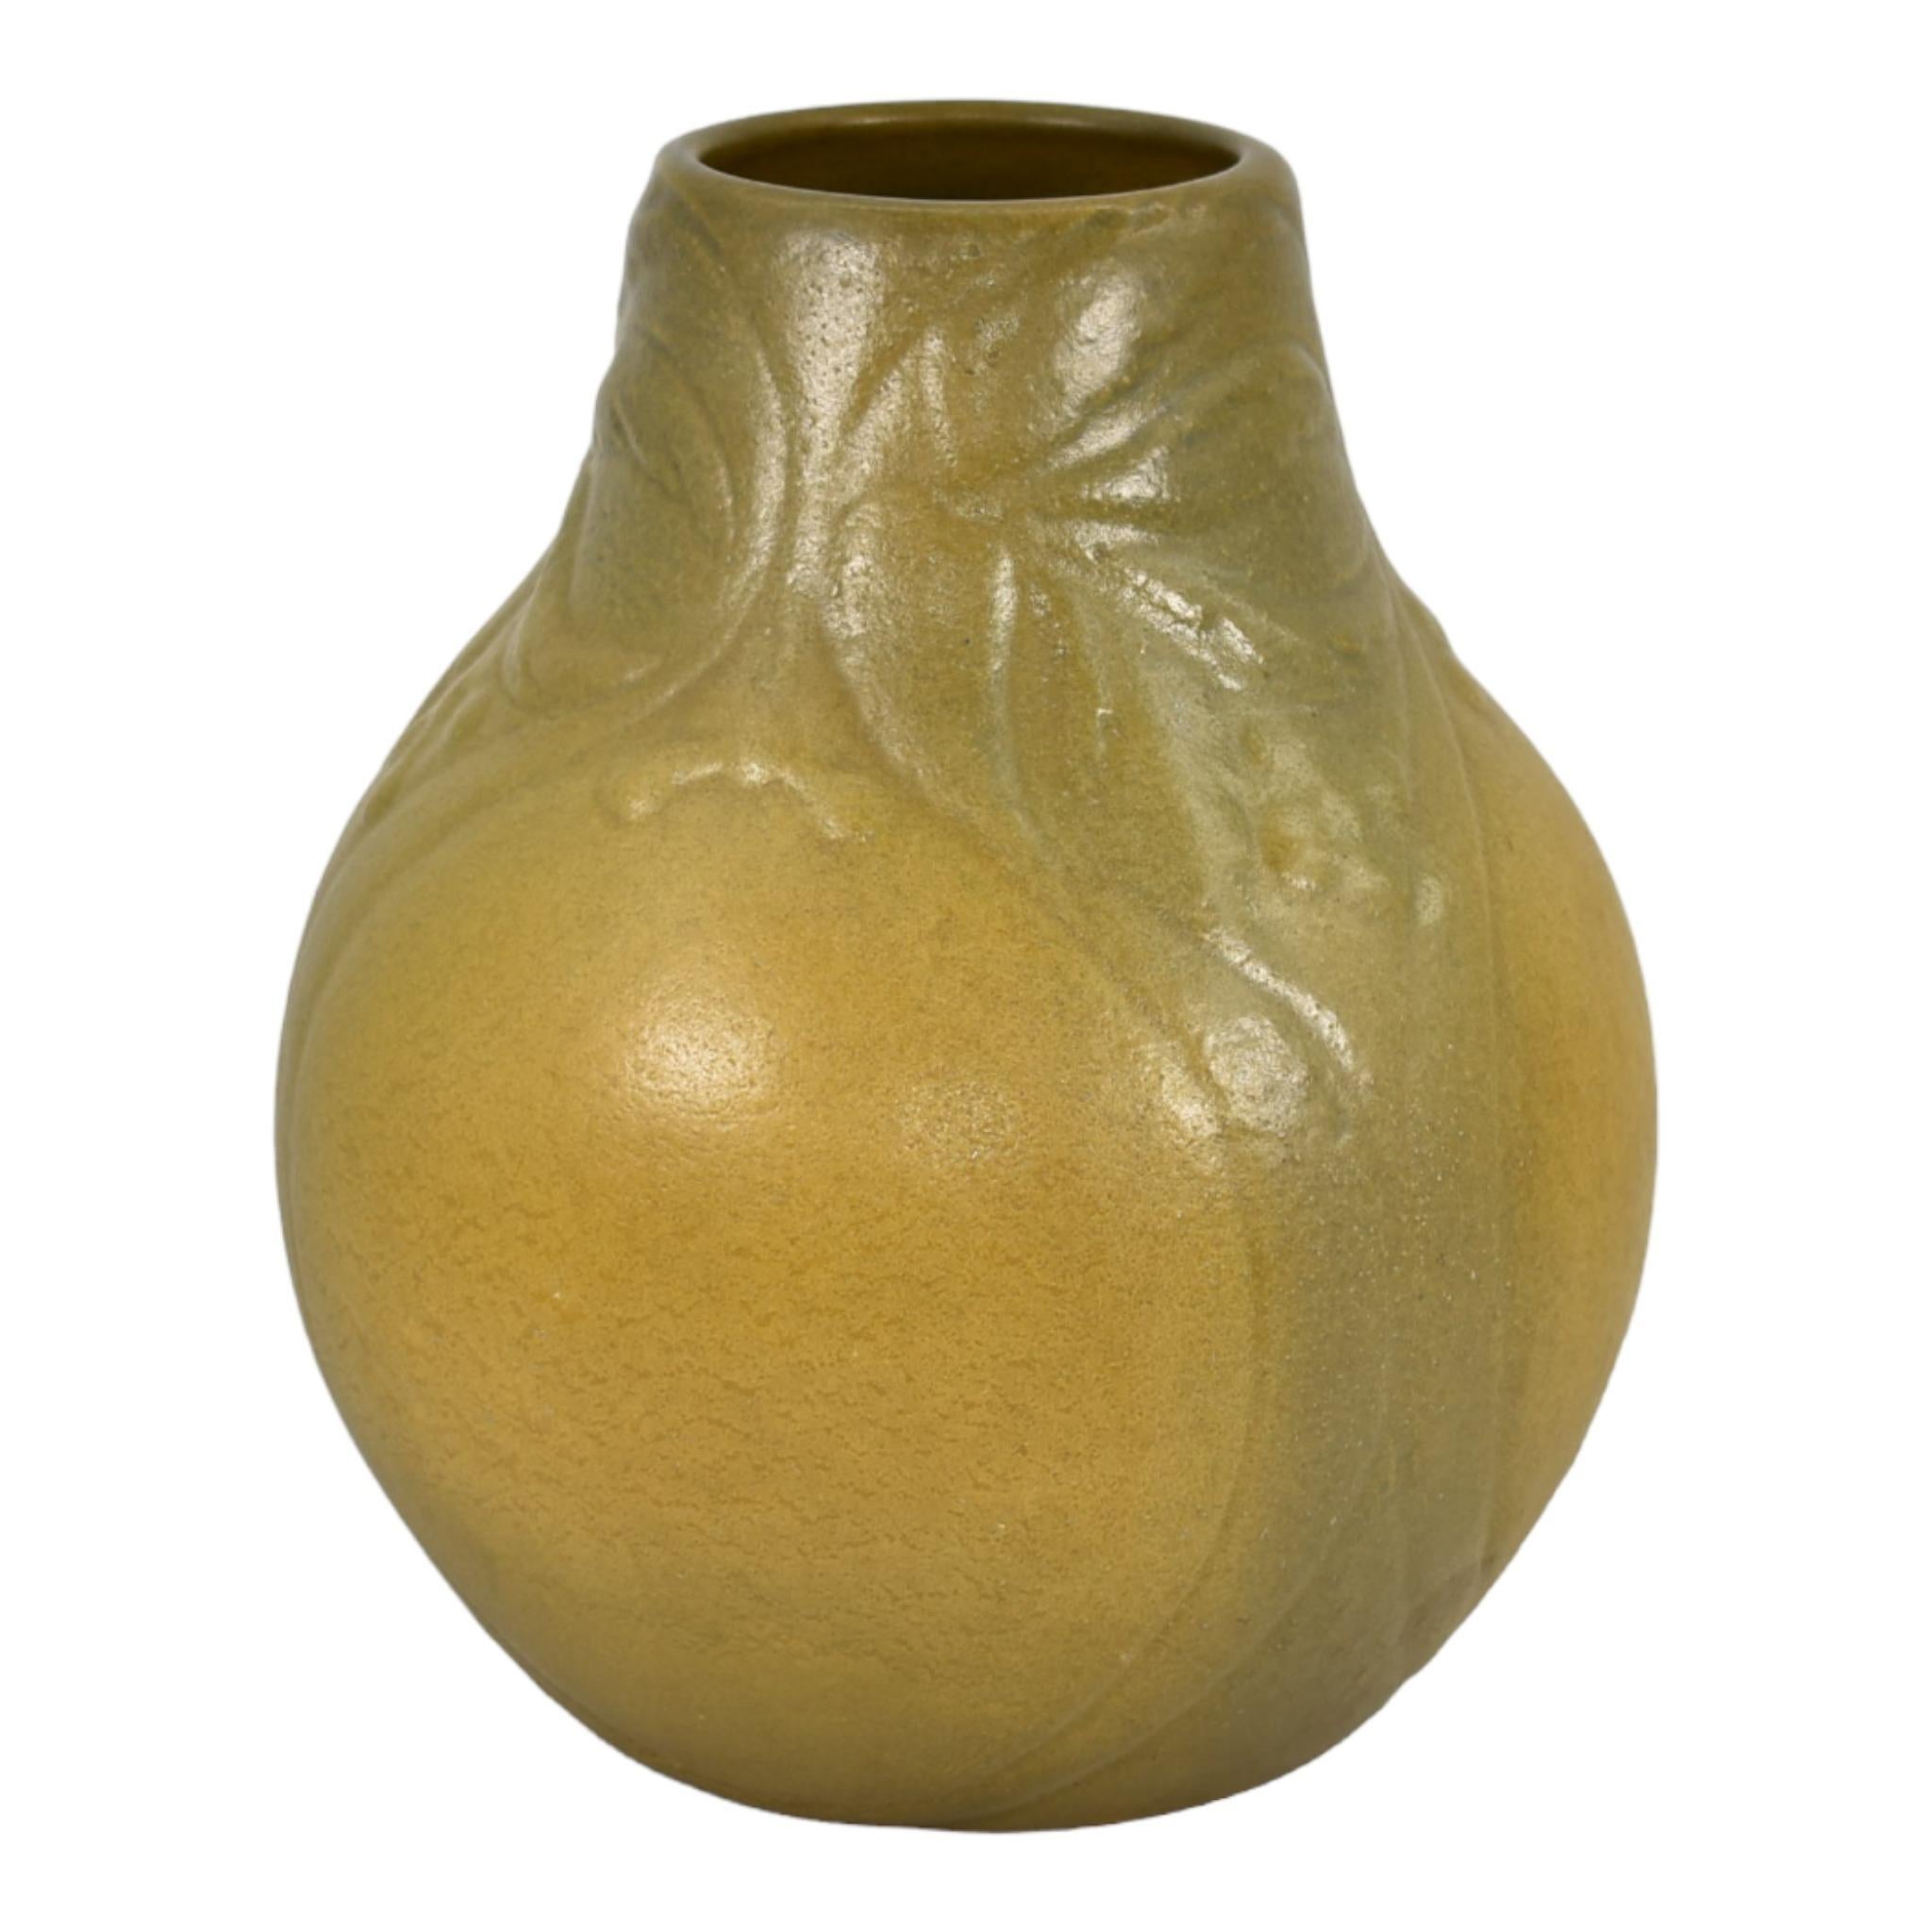 Van Briggle 1904 Vintage Arts And Crafts Pottery Olive Green Ceramic Vase 164
Superbe vase d'artisanat d'art recouvert d'un magnifique vert olive organique foncé et clair sur un motif végétal stylisé.
Excellent état d'origine. Pas d'ébréchures, de